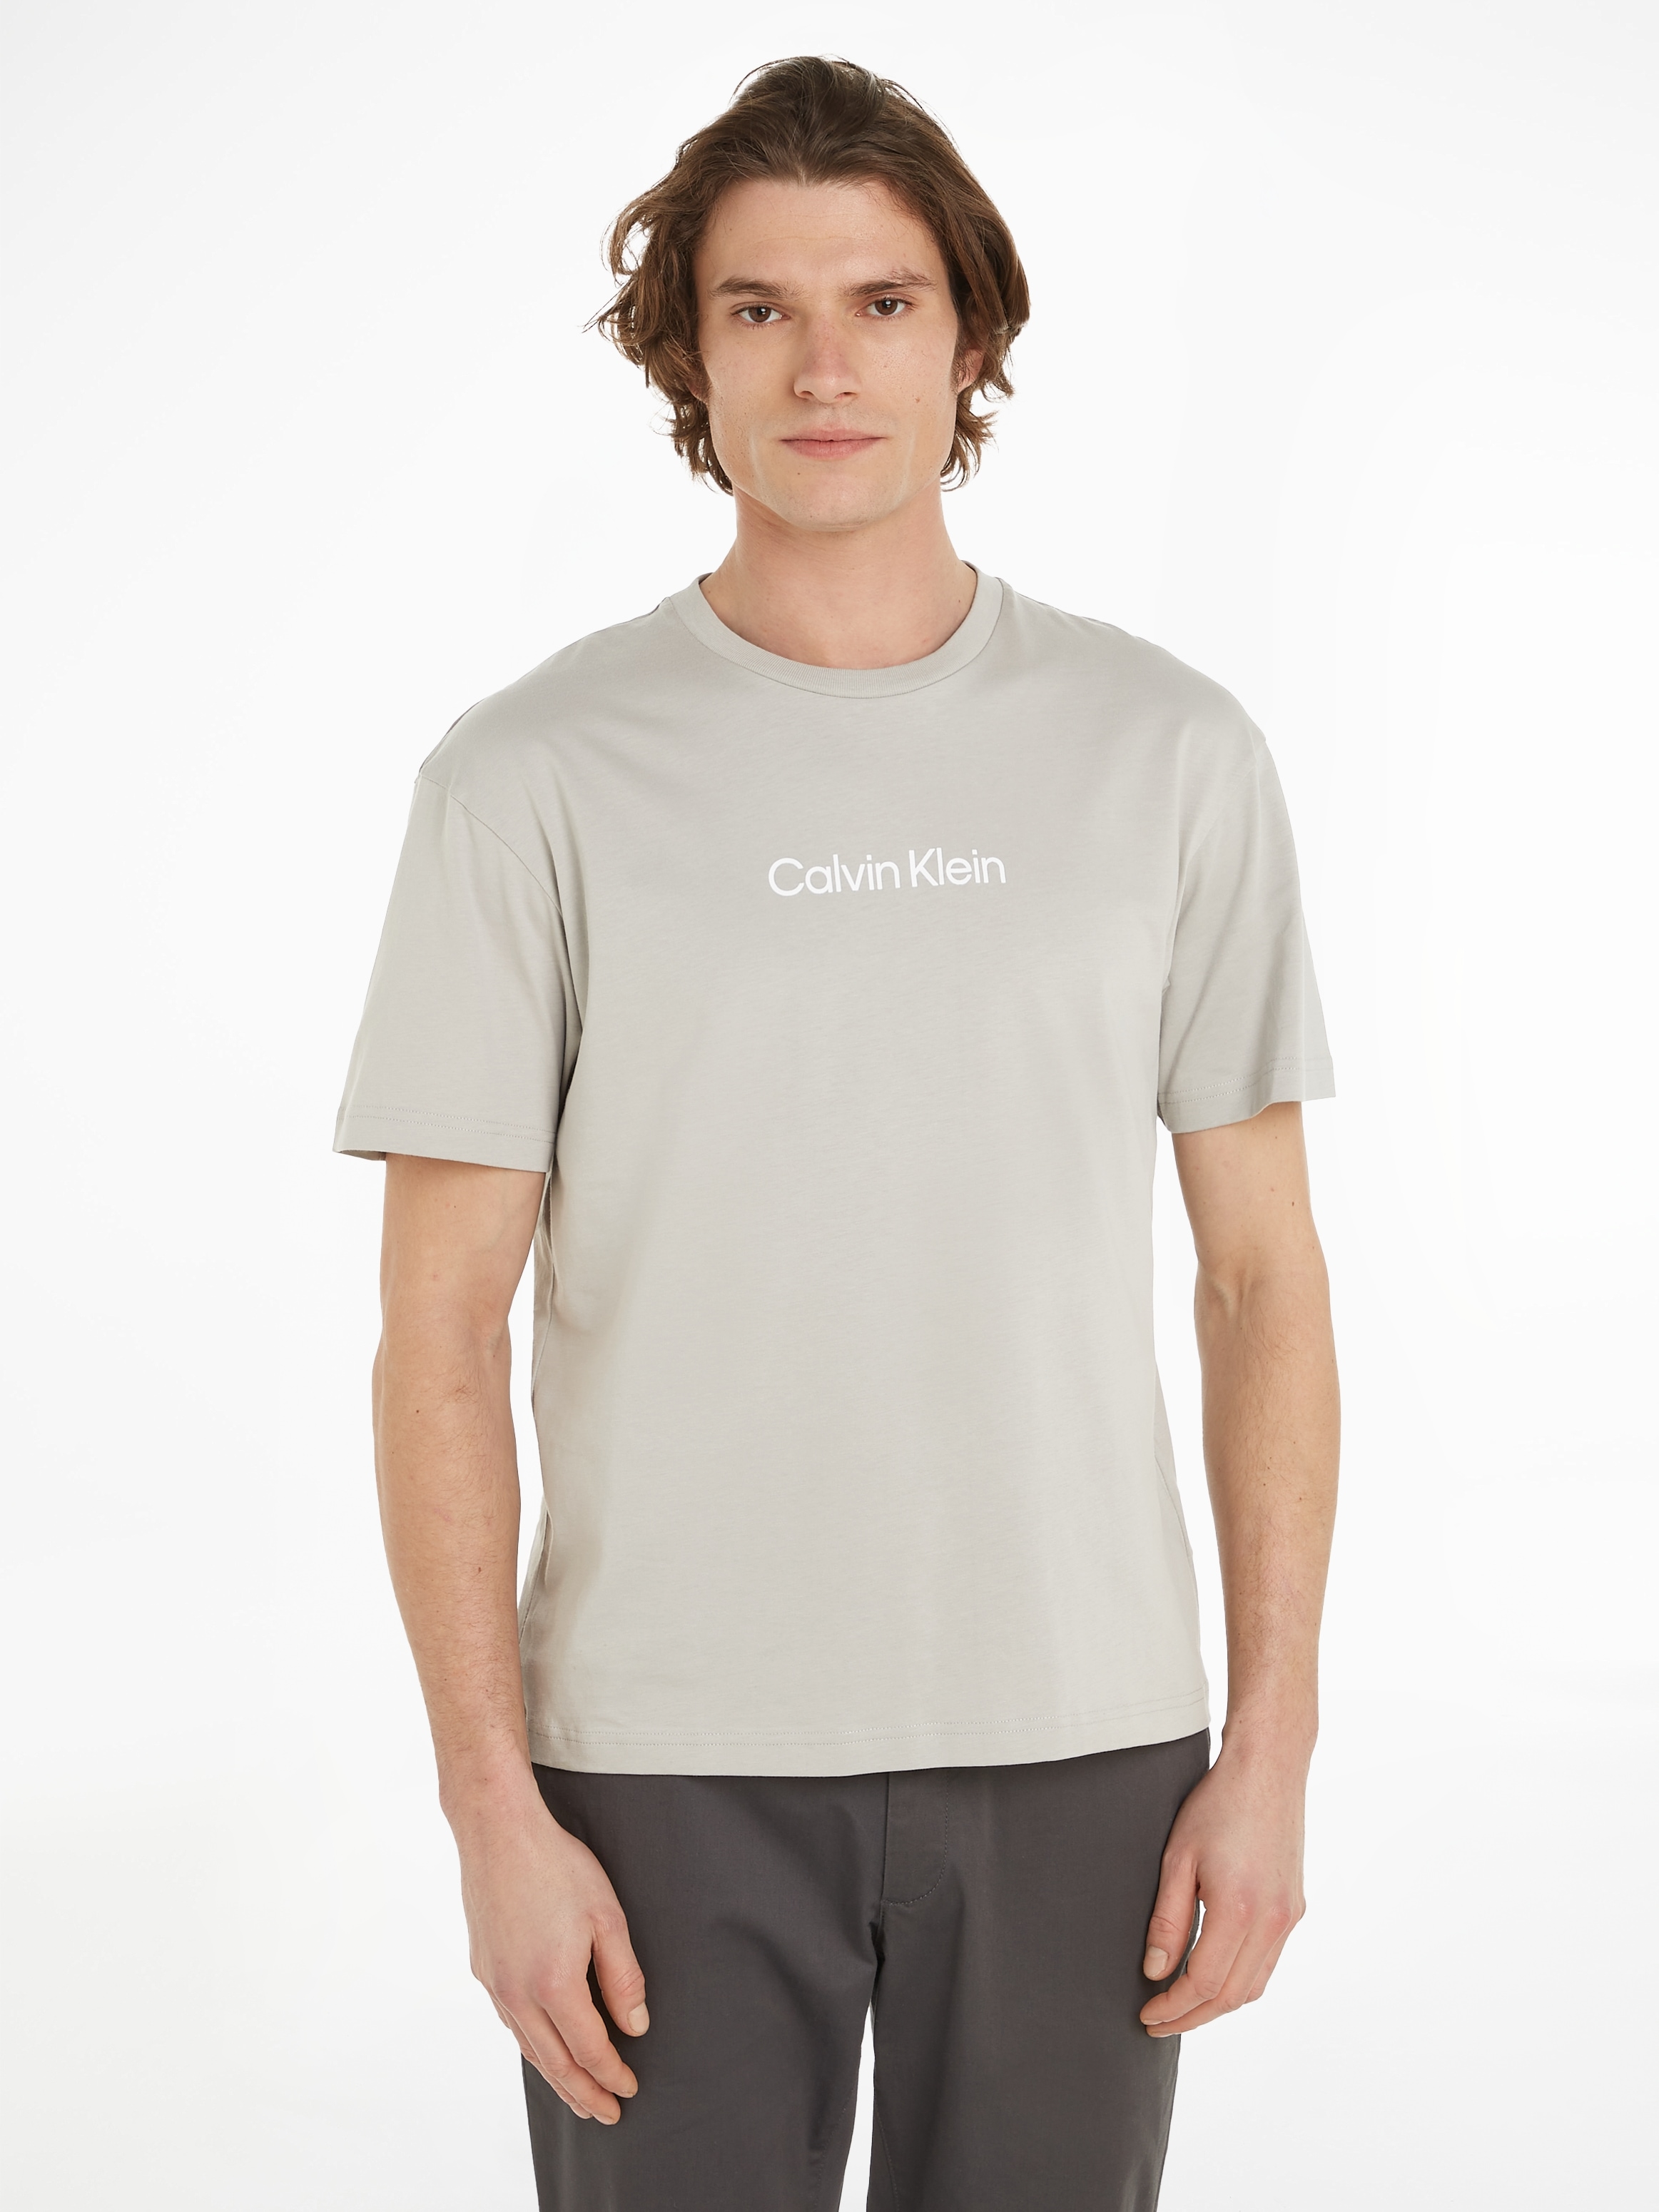 Calvin Klein aufgedrucktem COMFORT ♕ Markenlabel bei »HERO mit T-Shirt T-SHIRT«, LOGO